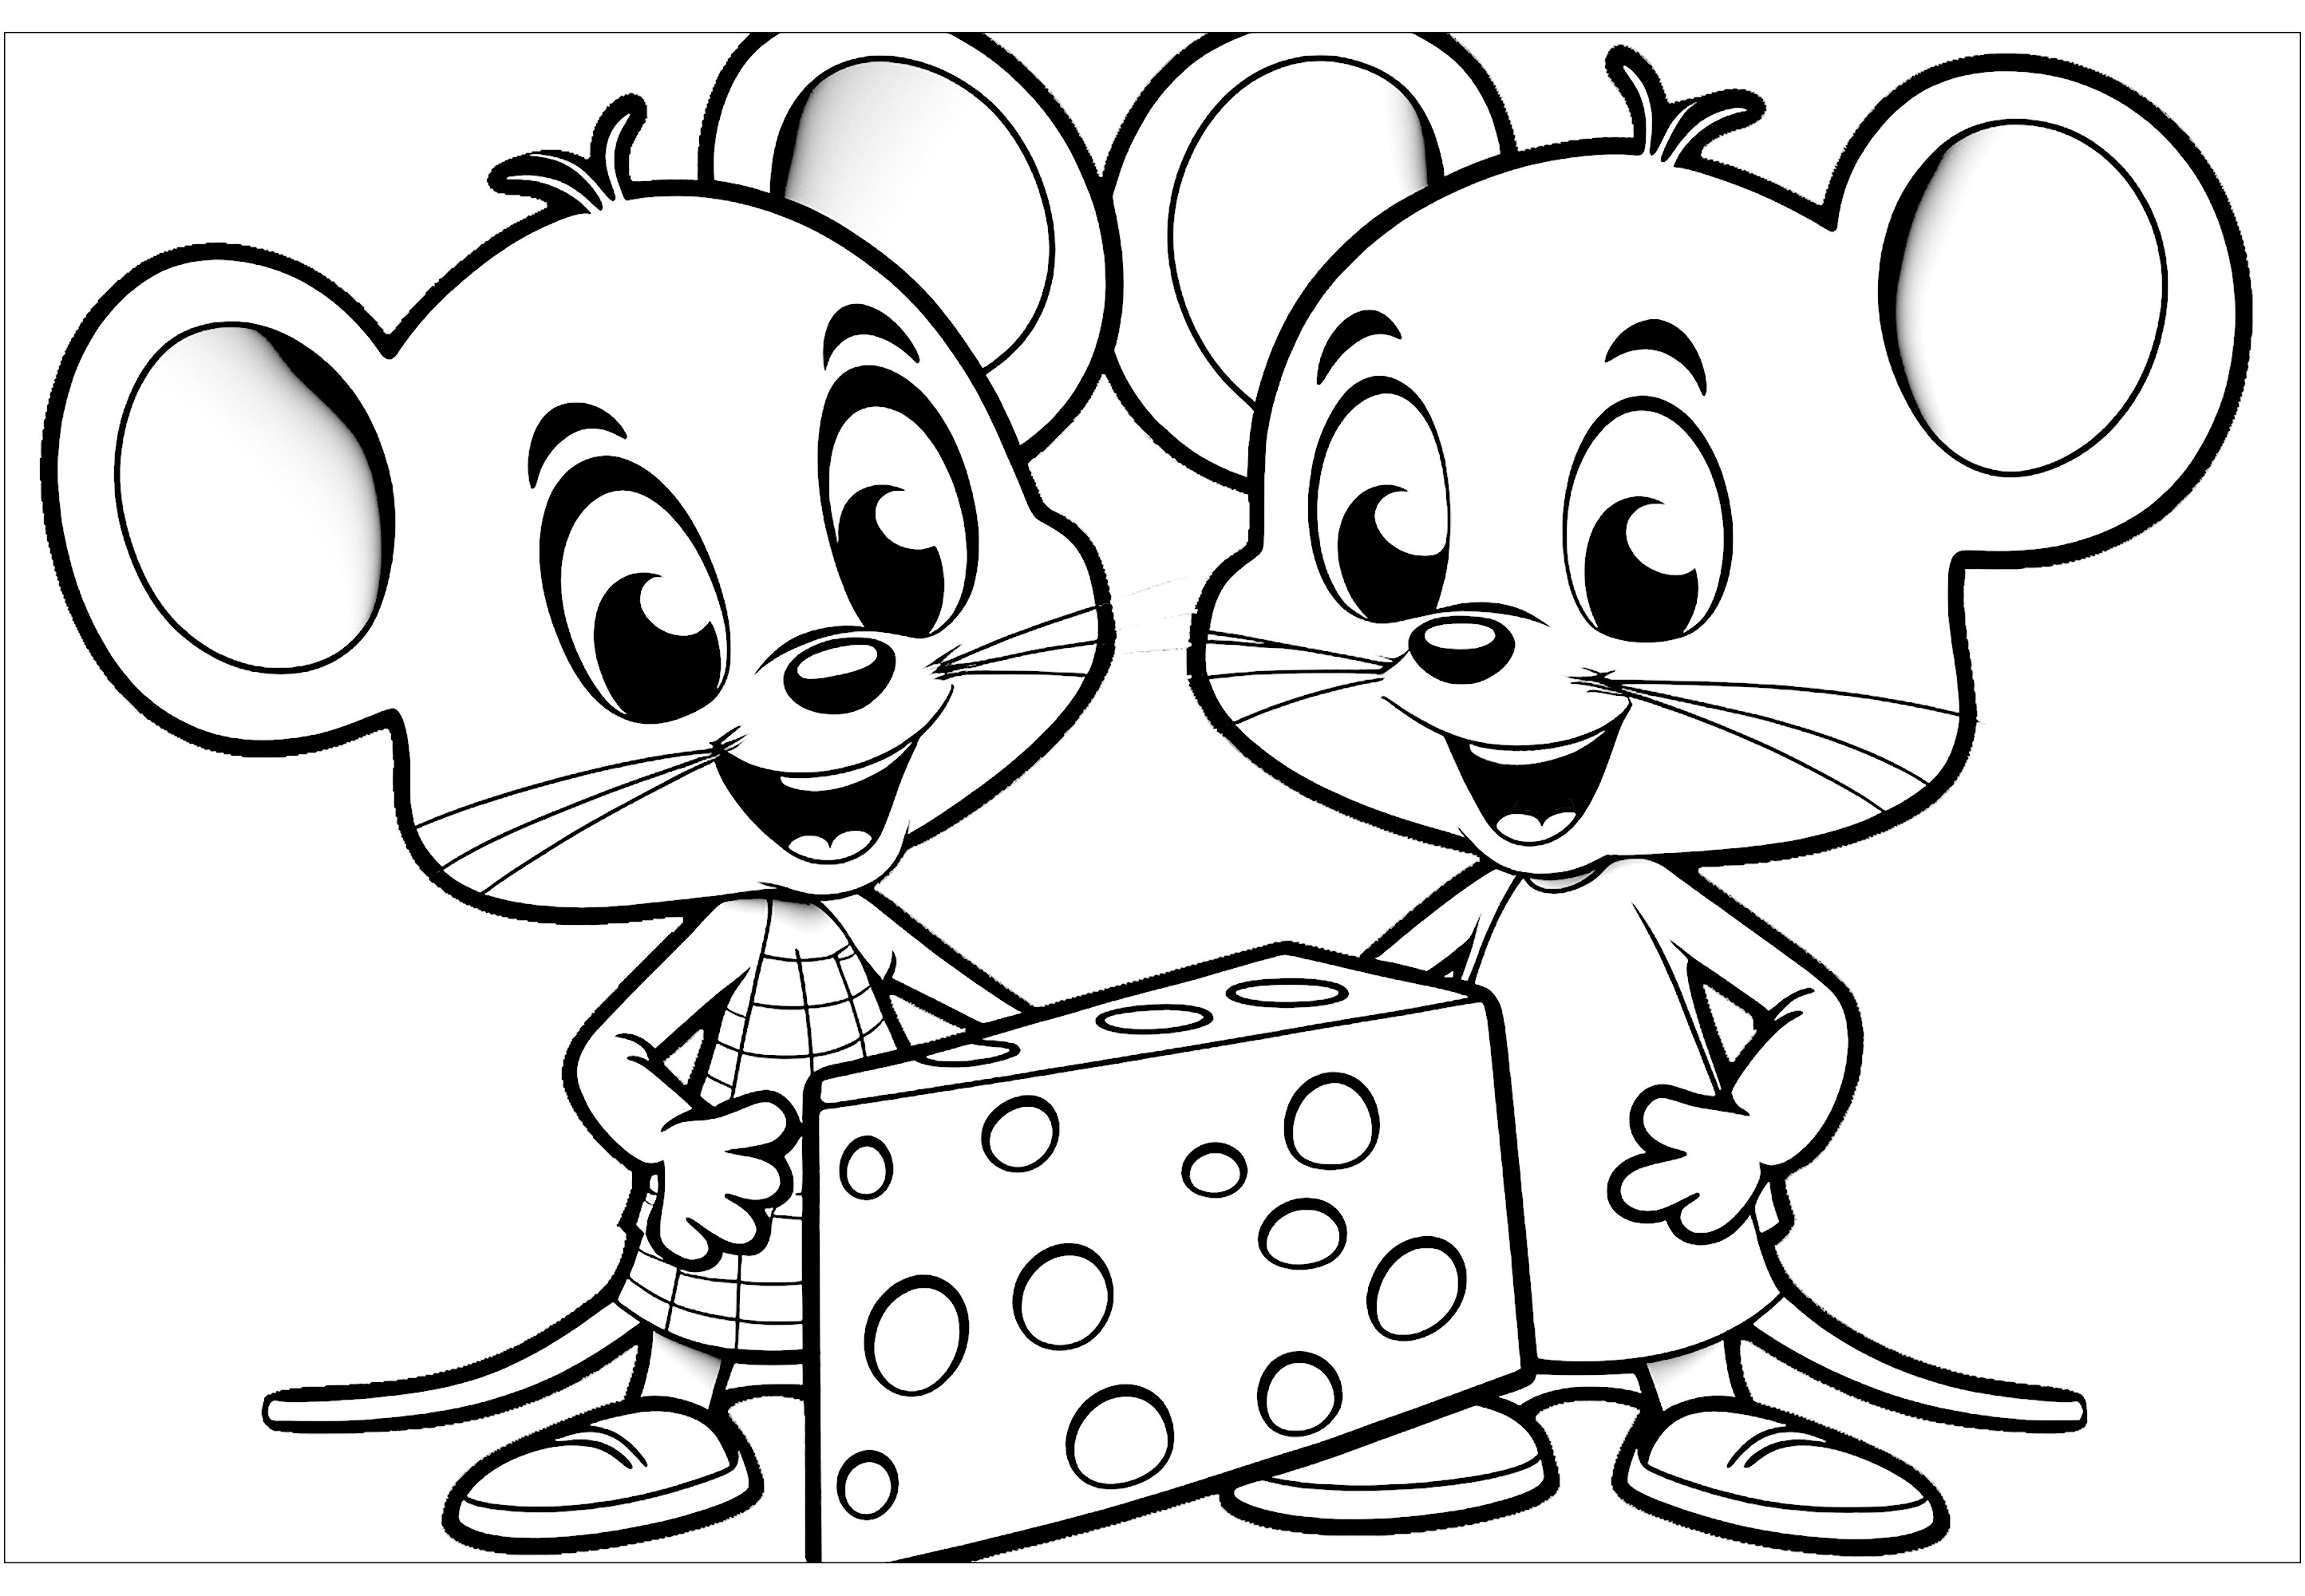 Coloriage de deux souris espiègles prêtes à manger un gros morceau de fromage. Quelle souris va commencer à manger ce fromage ? Il a l'air délicieux